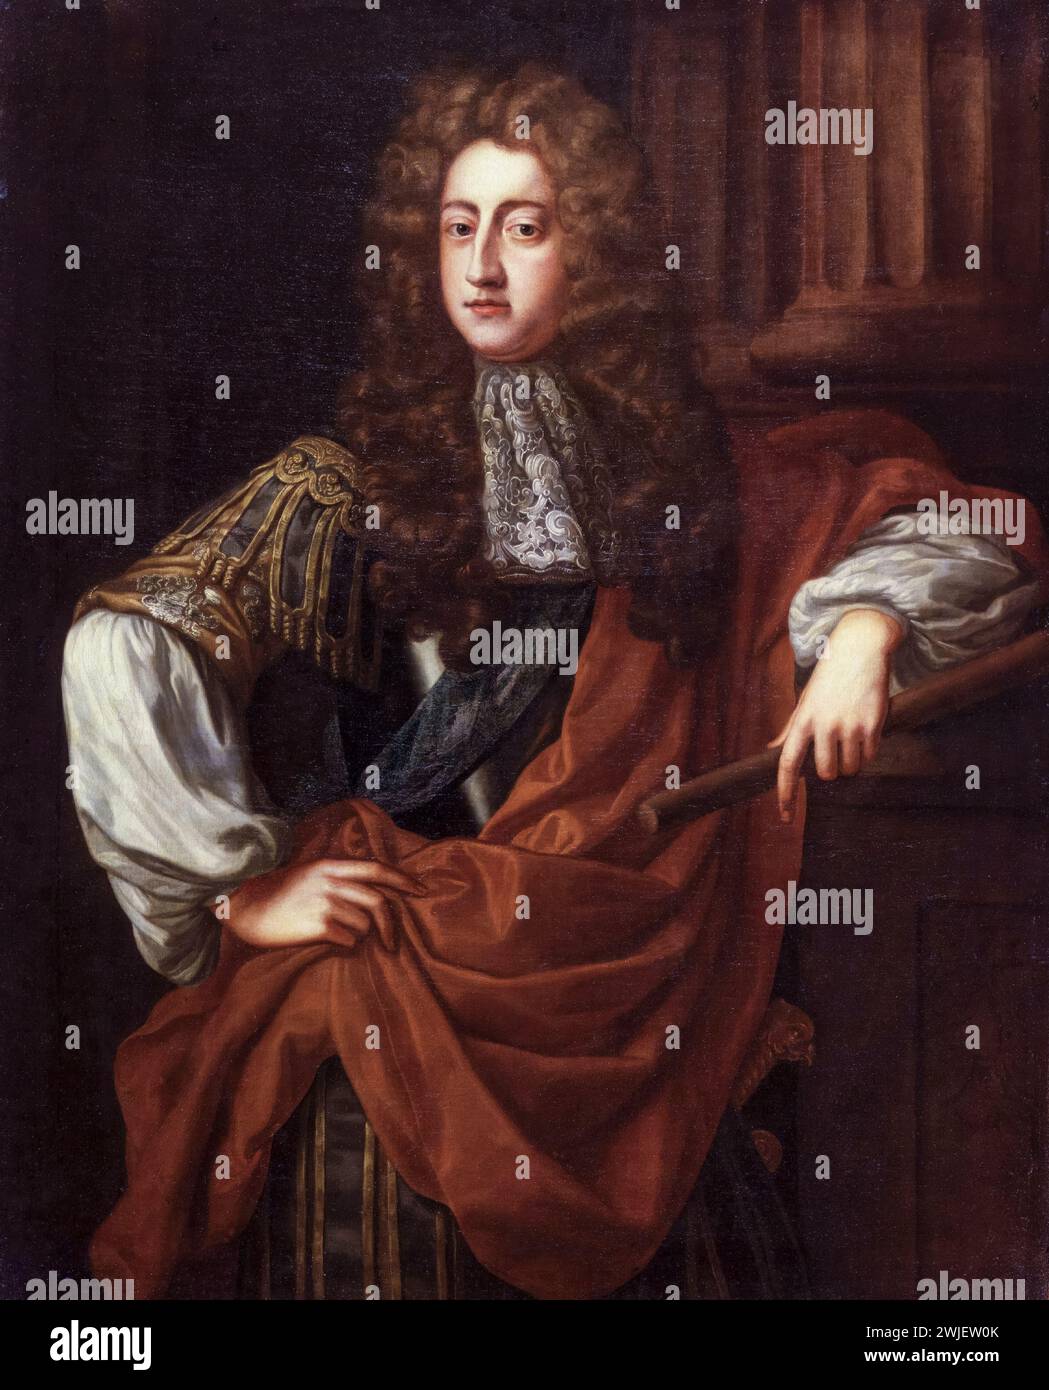 Principe Giorgio di Danimarca (1653-1708), duca di Cumberland, consorte della regina Anna d'Inghilterra (in seguito, Gran Bretagna), ritratto dipinto ad olio su tela dopo John Riley, circa 1687 Foto Stock